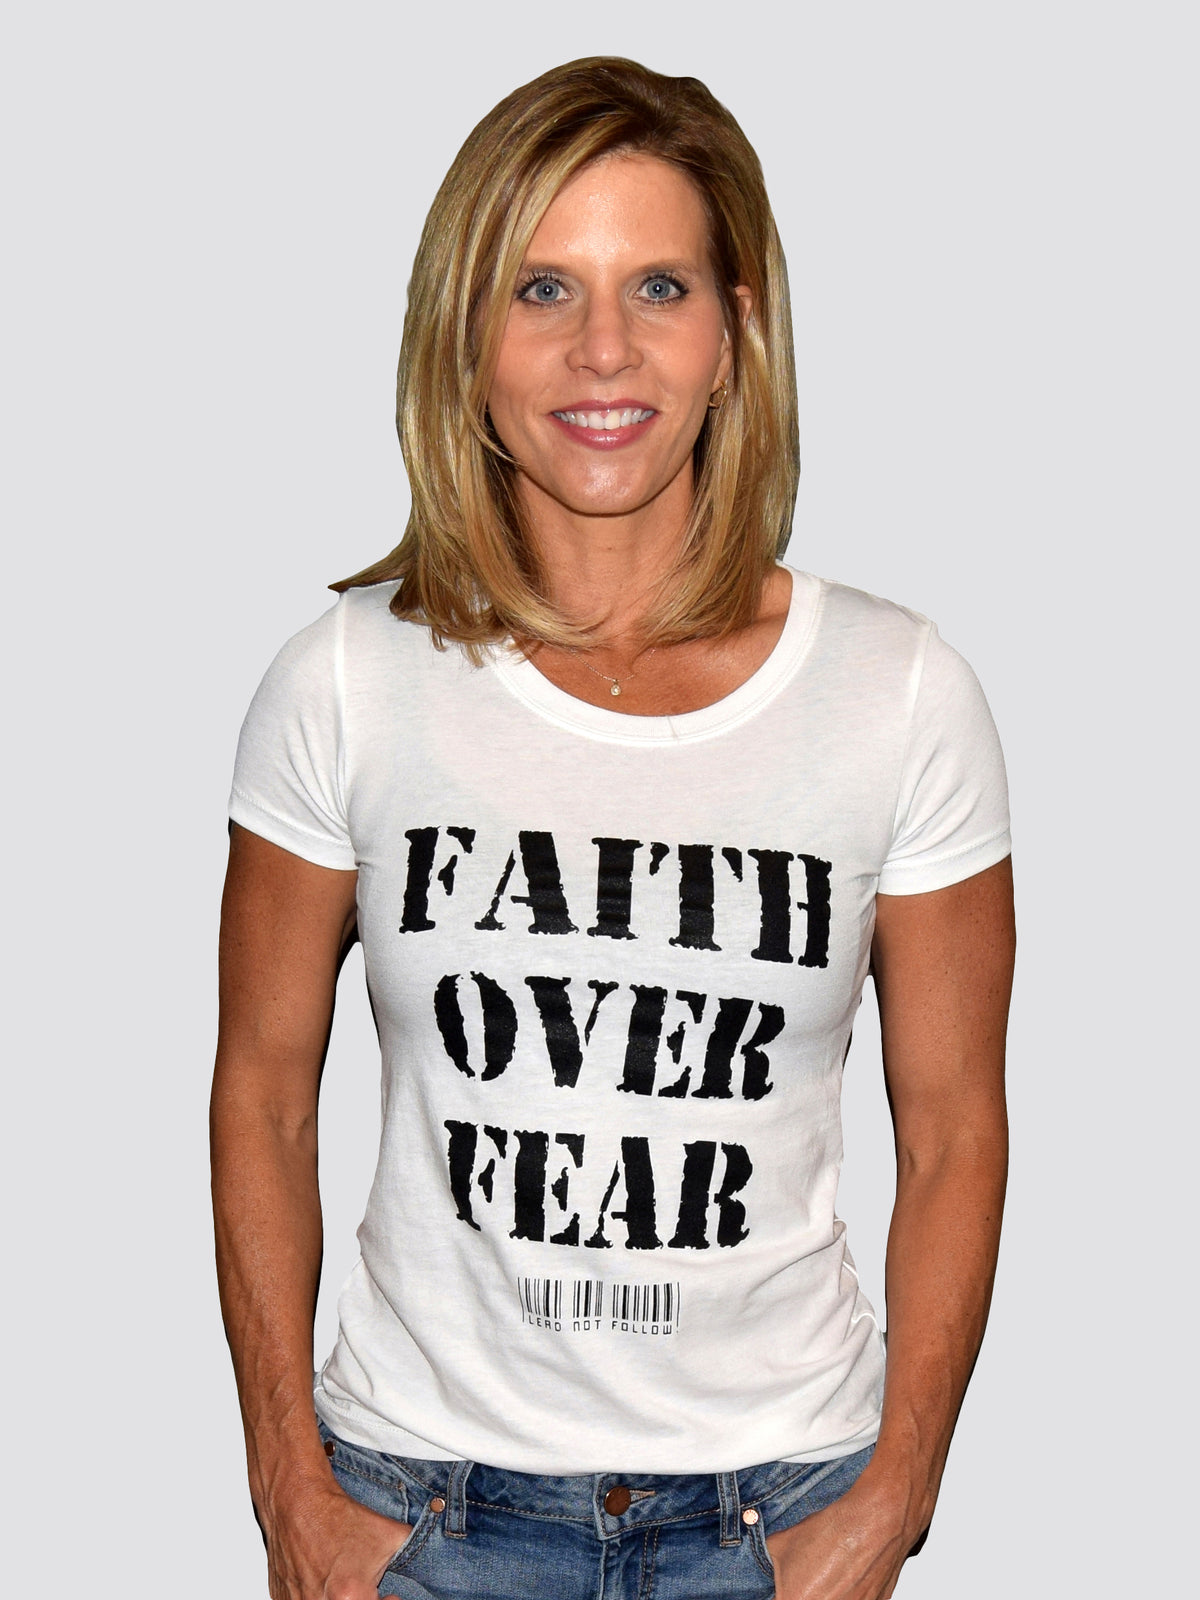 FAITH OVER FEAR Womens Crewneck T-Shirt